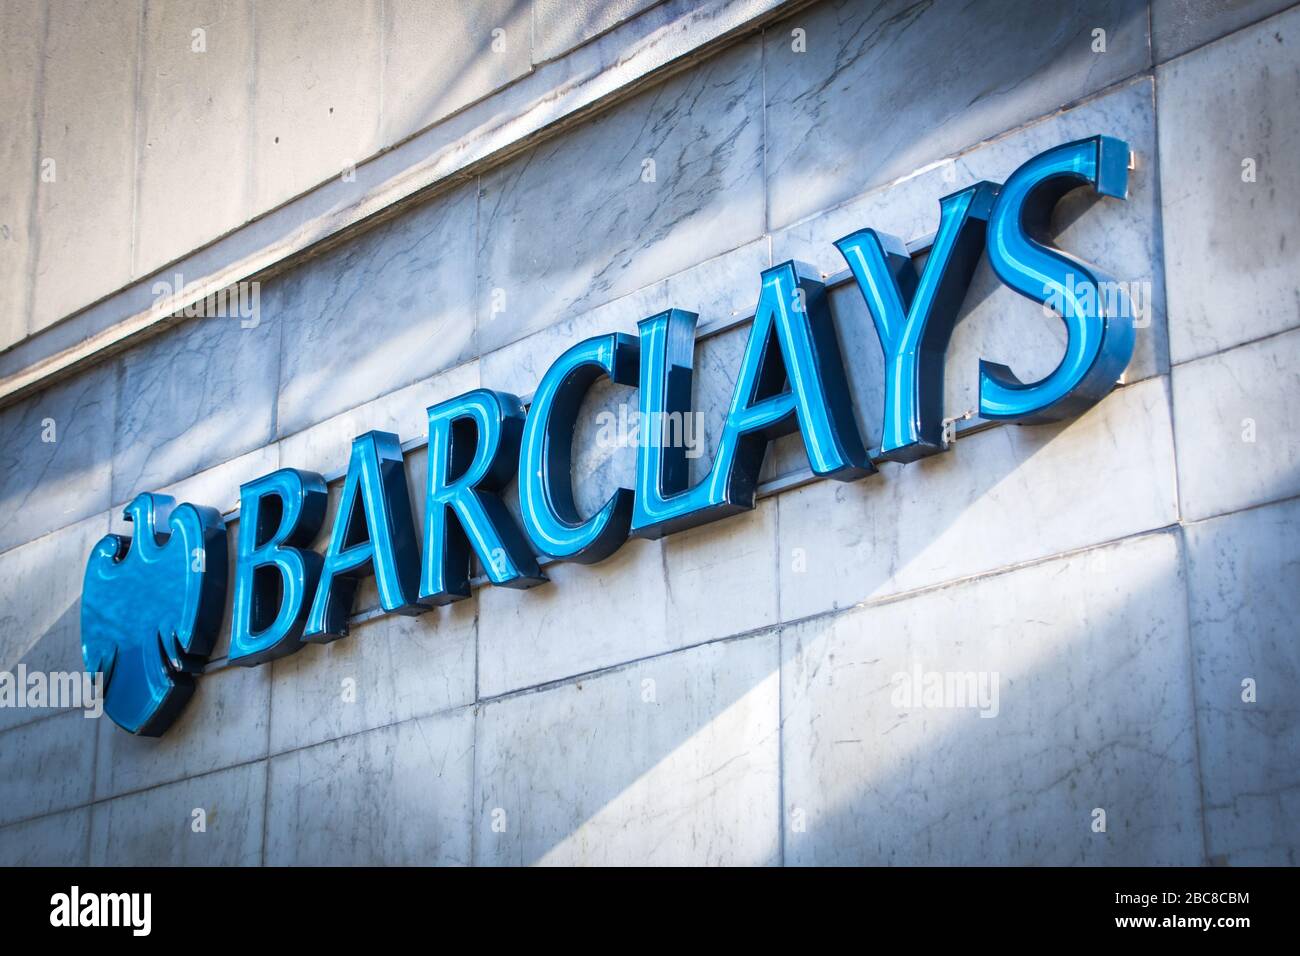 Affichage de la succursale de la banque de rue Barclays - Londres, Royaume-Uni Banque D'Images